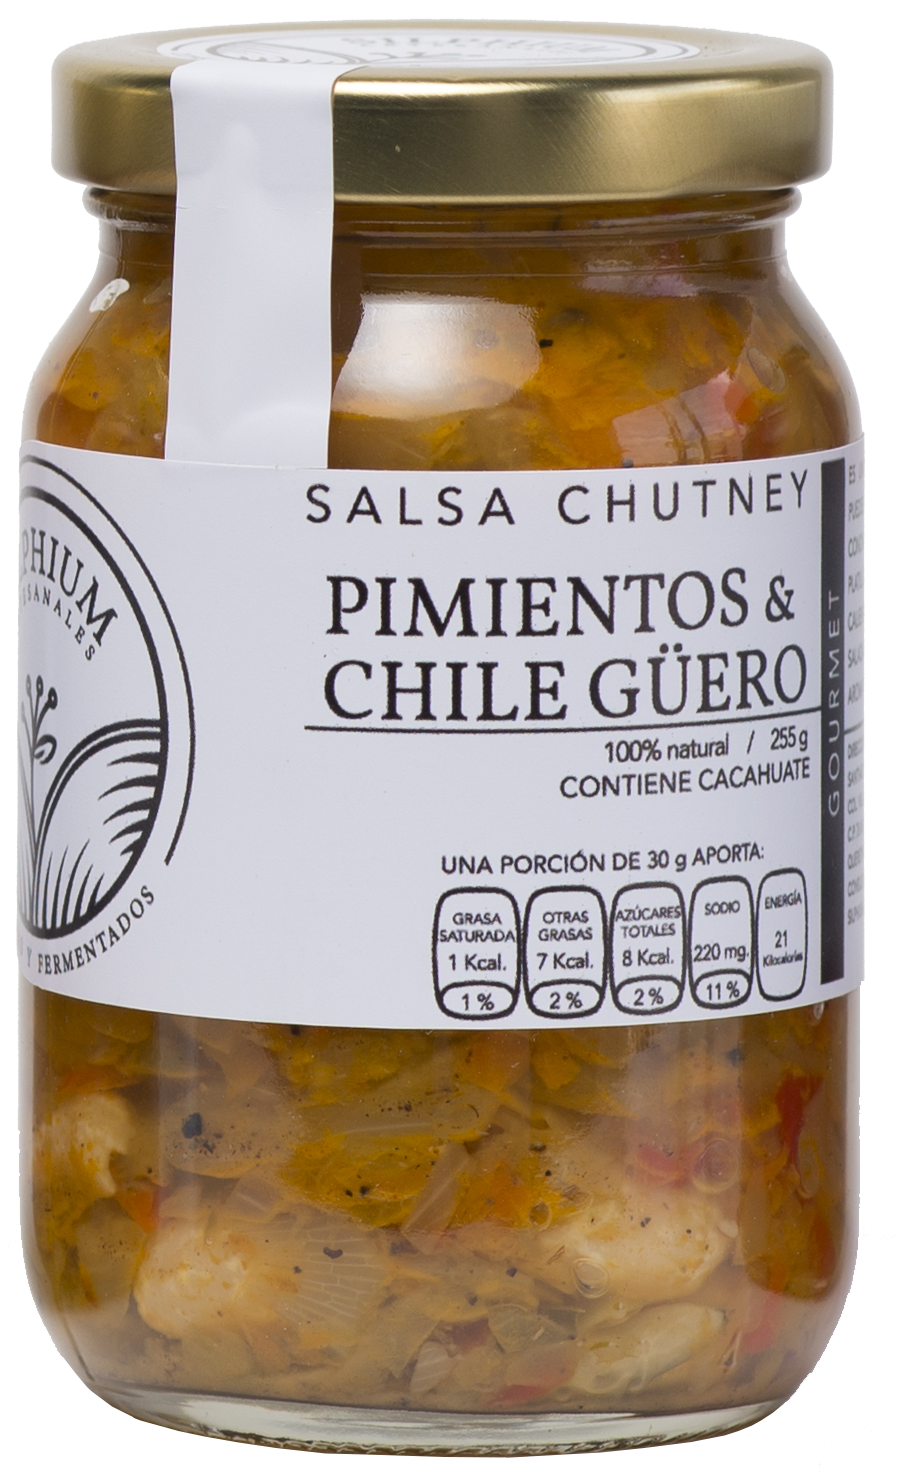 Salsa Chutney Pimientos & Chile guero (Silphium) 255 g